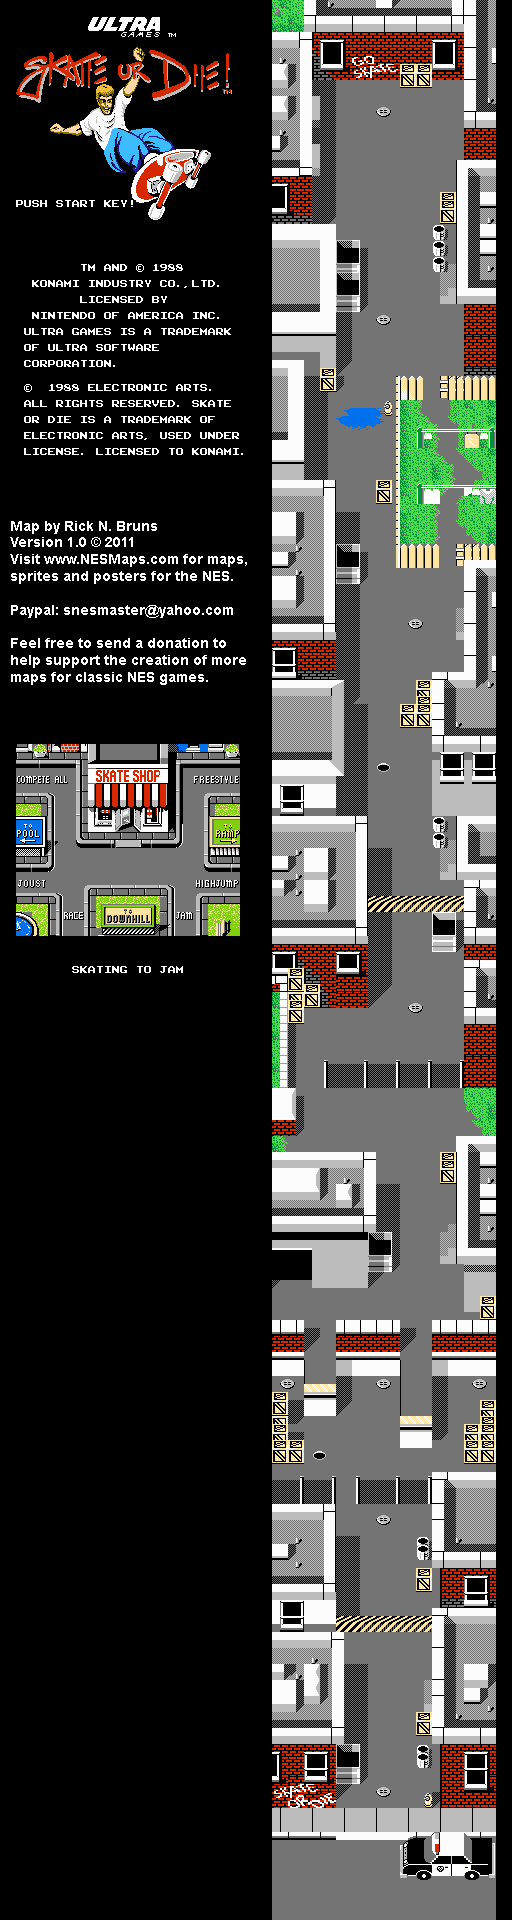 Skate or Die! - Jam Nintendo NES Map BG